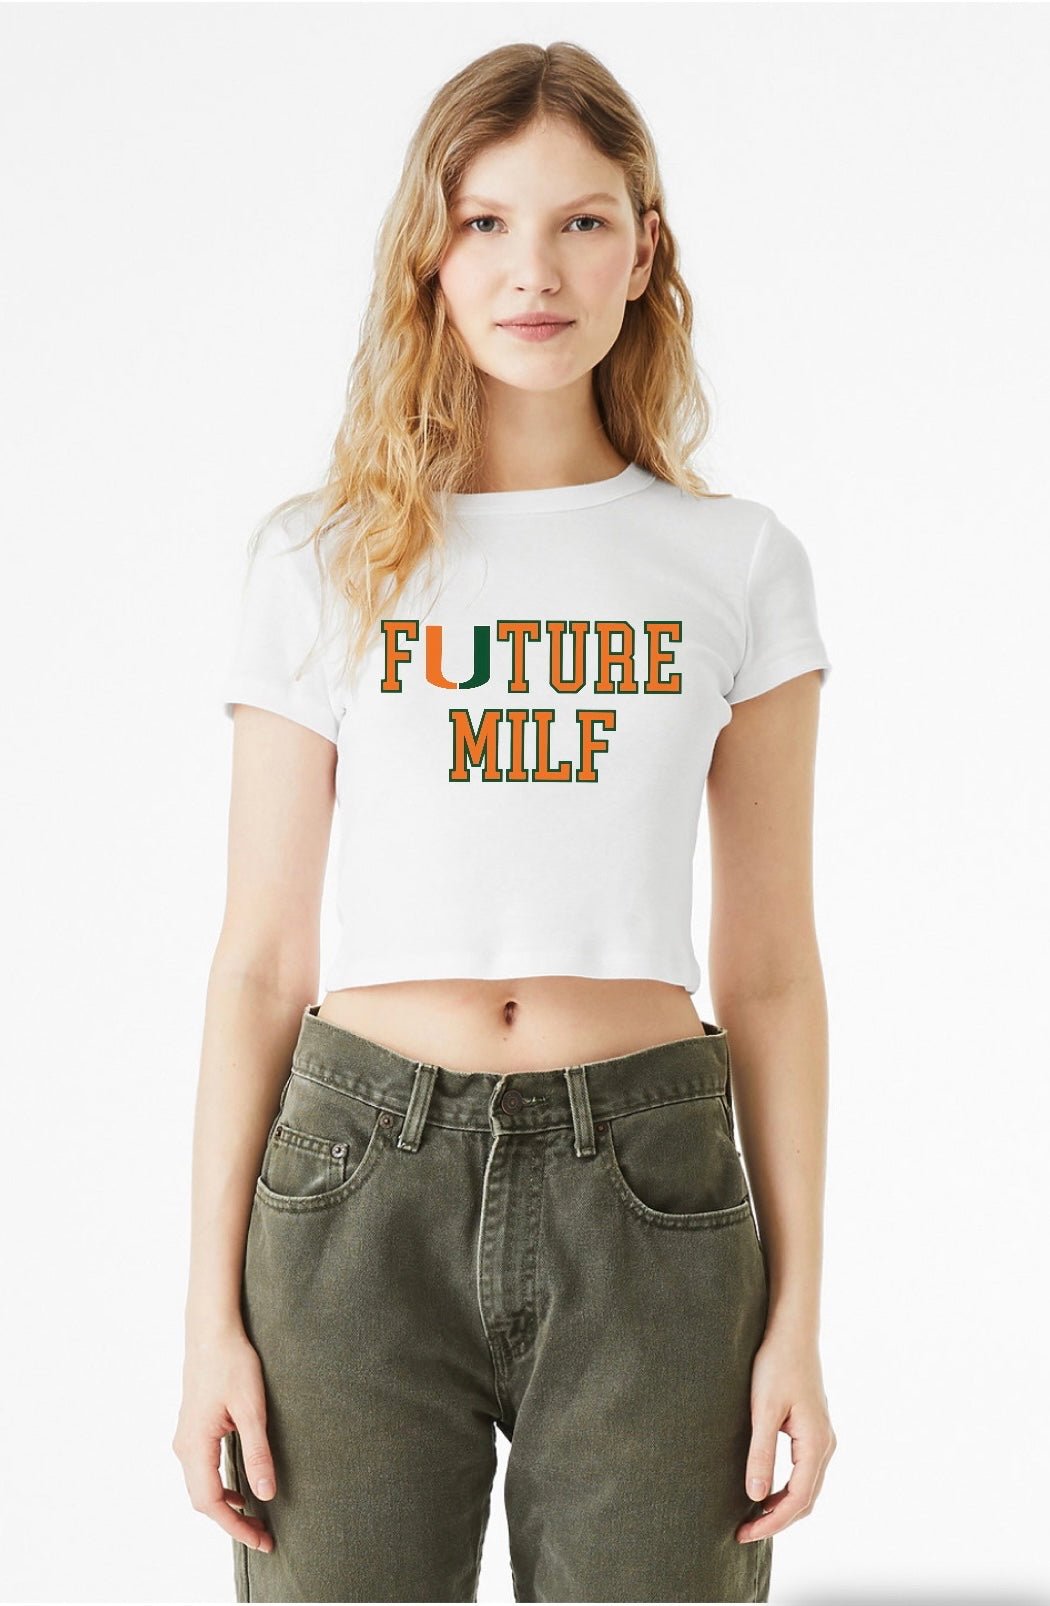 y2k milfs Essential T-Shirt for Sale by daysdreammm